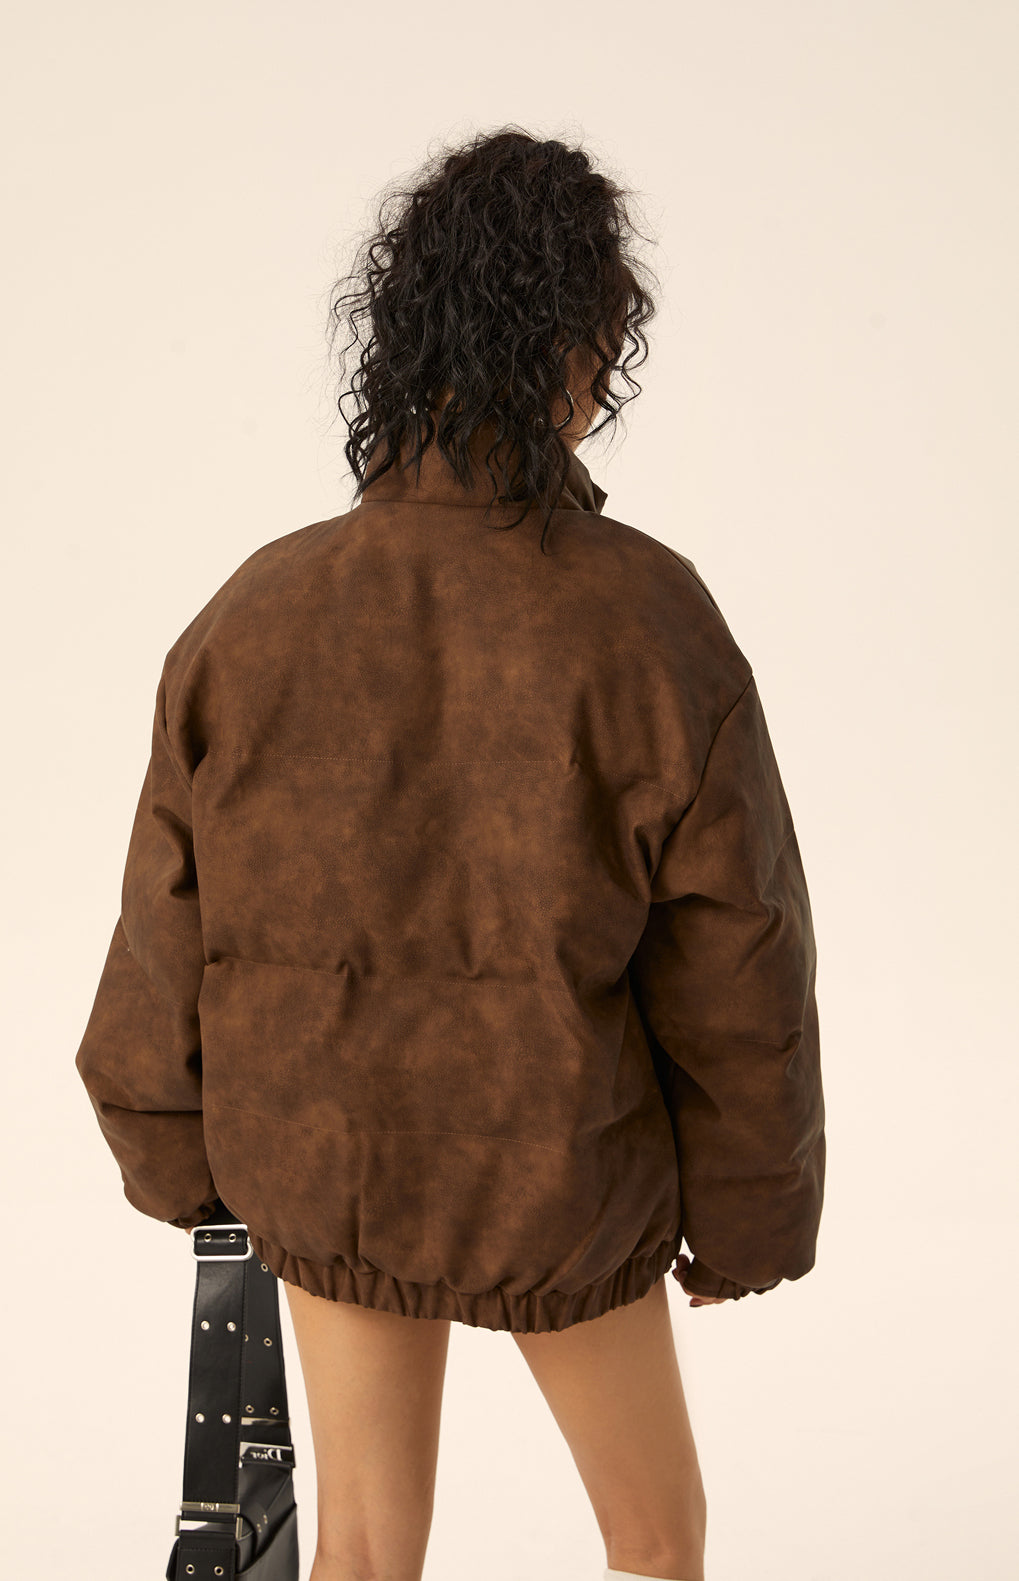 루즈 다운 재킷 EZ061